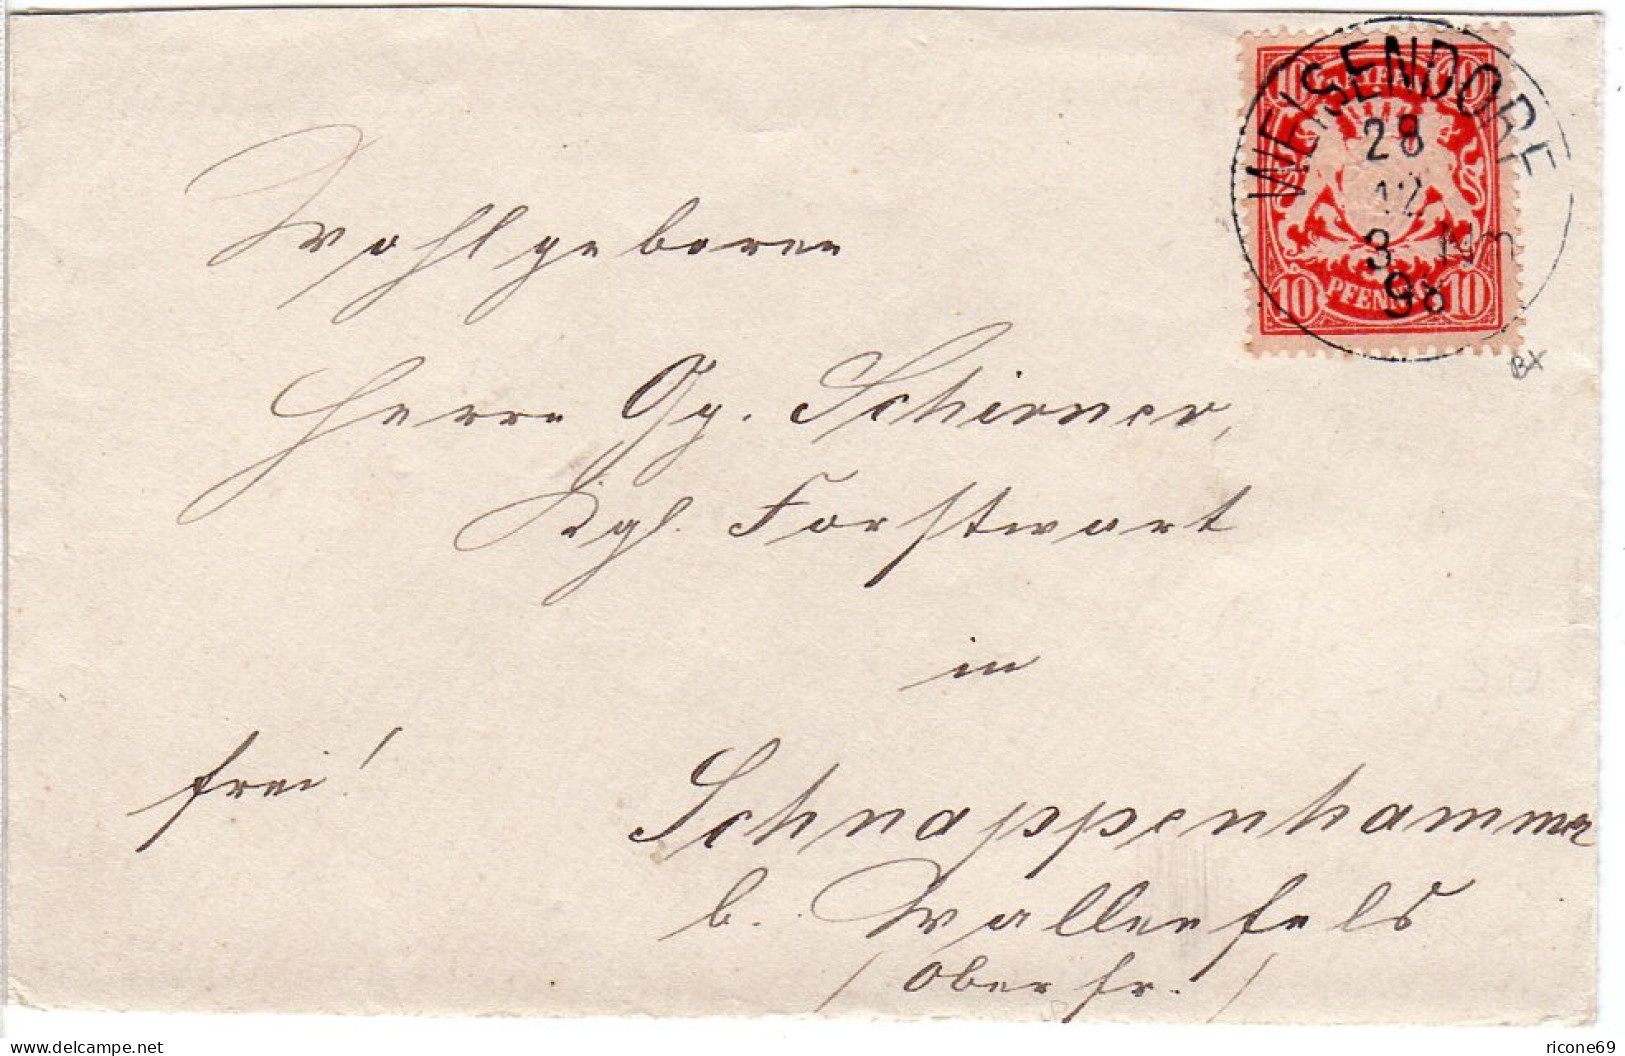 Bayern 1898, K1 WEISENDORF Auf Brief M. 10 Pf. N. Schnappenhammer B. Wallenfels - Collections